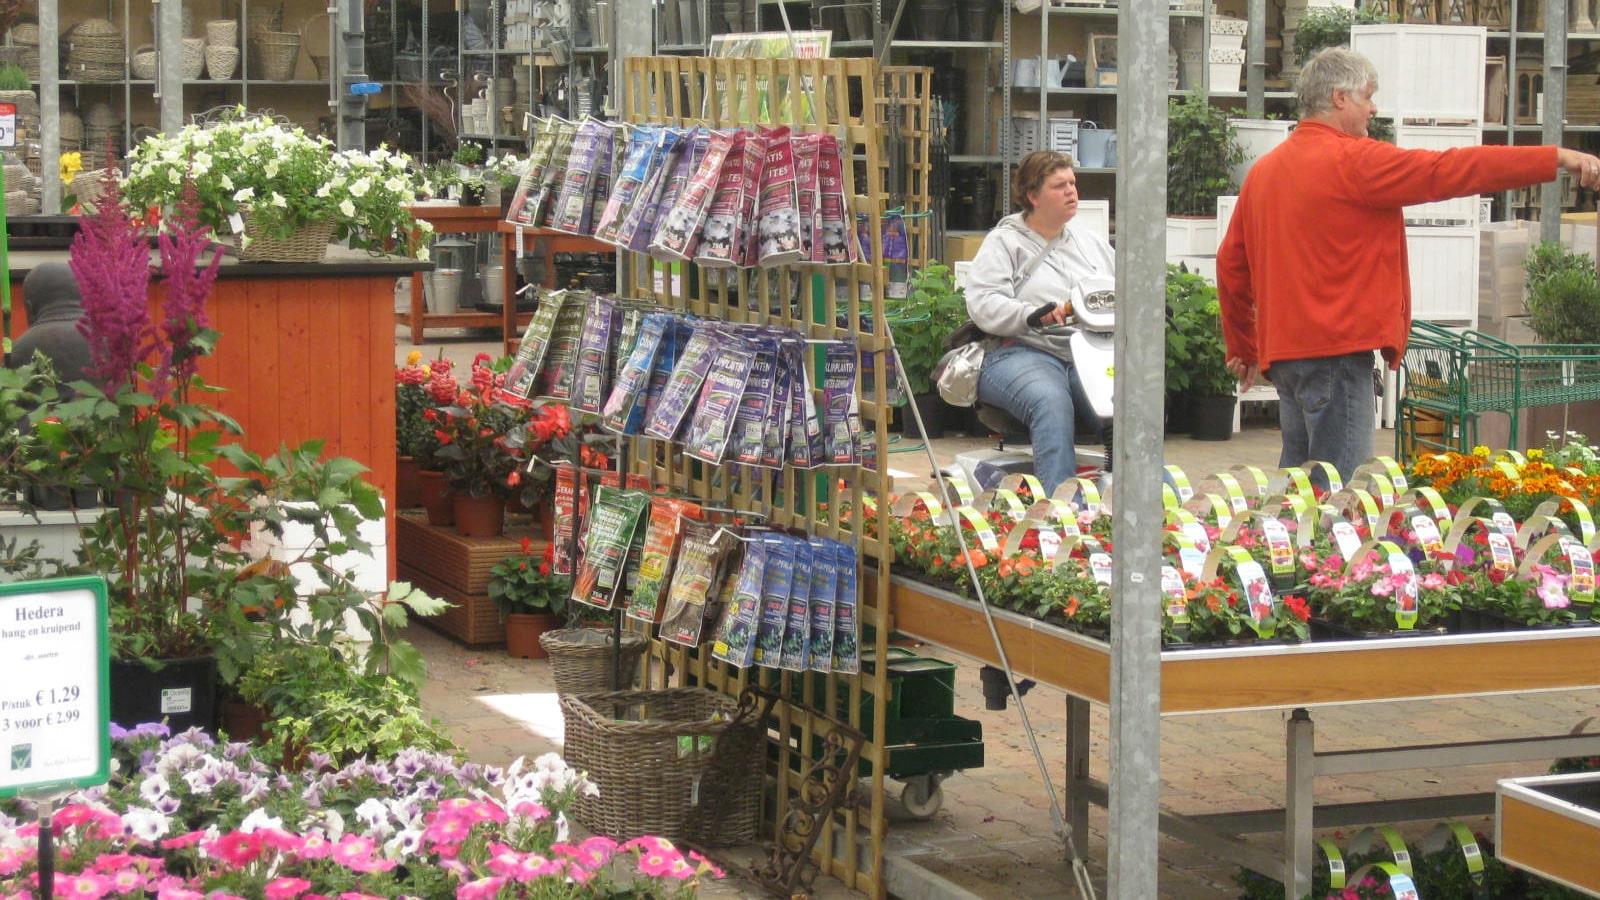 Dutch Garden Centre saved €1200 on container rental